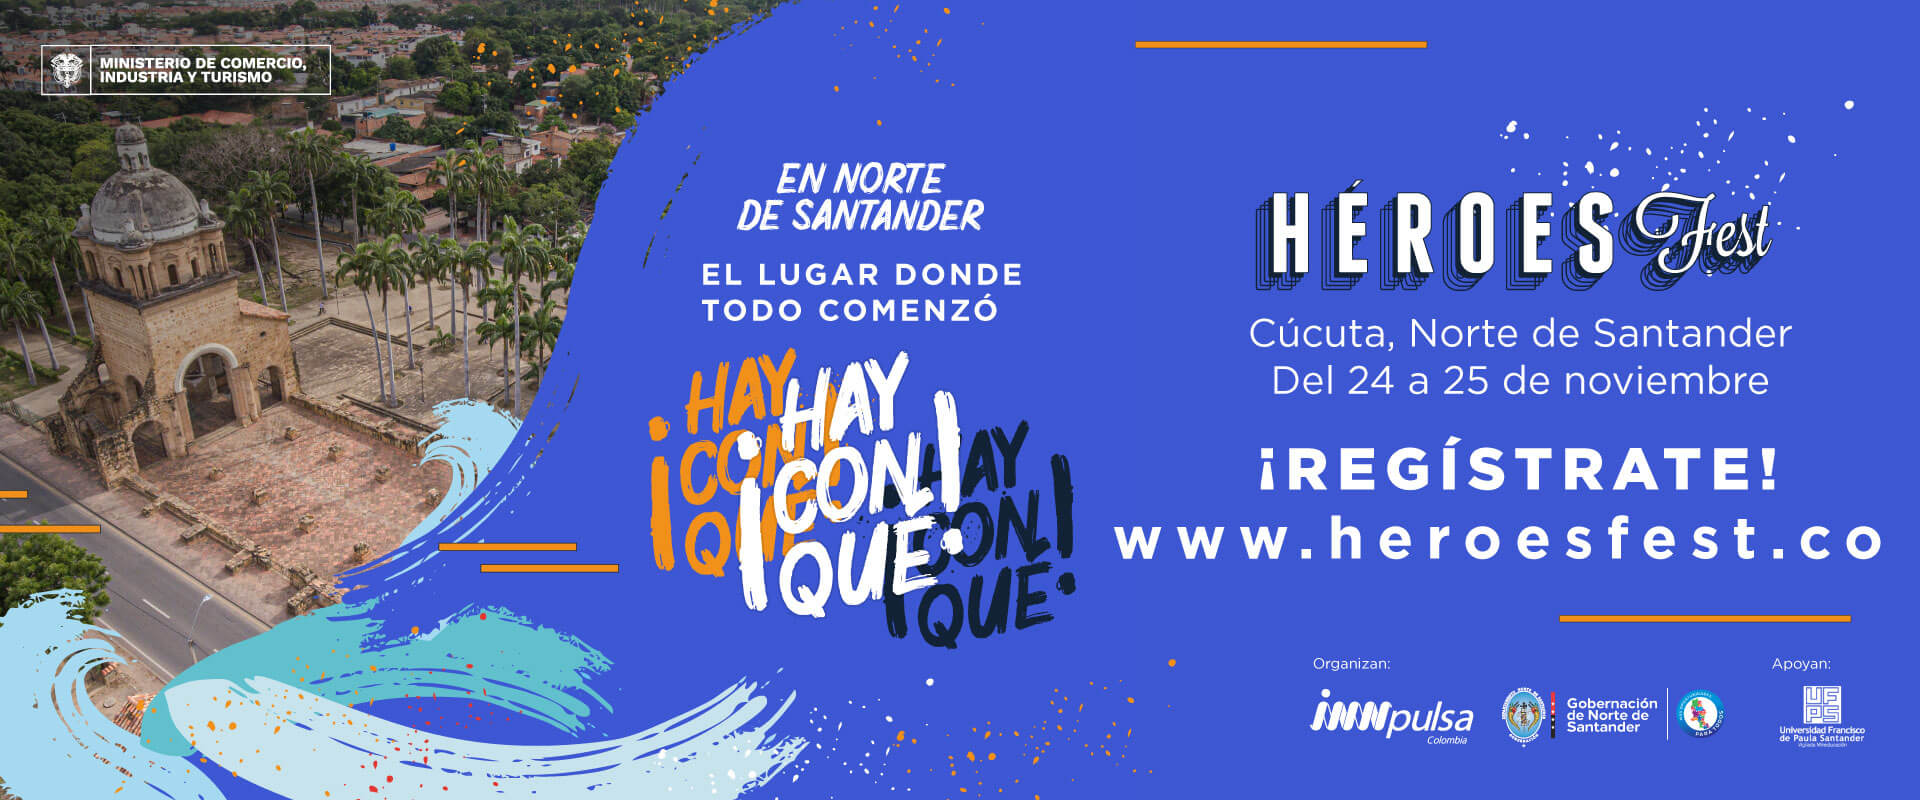 Banner de invitación al Evento Heroes Fest de Norte de Santander